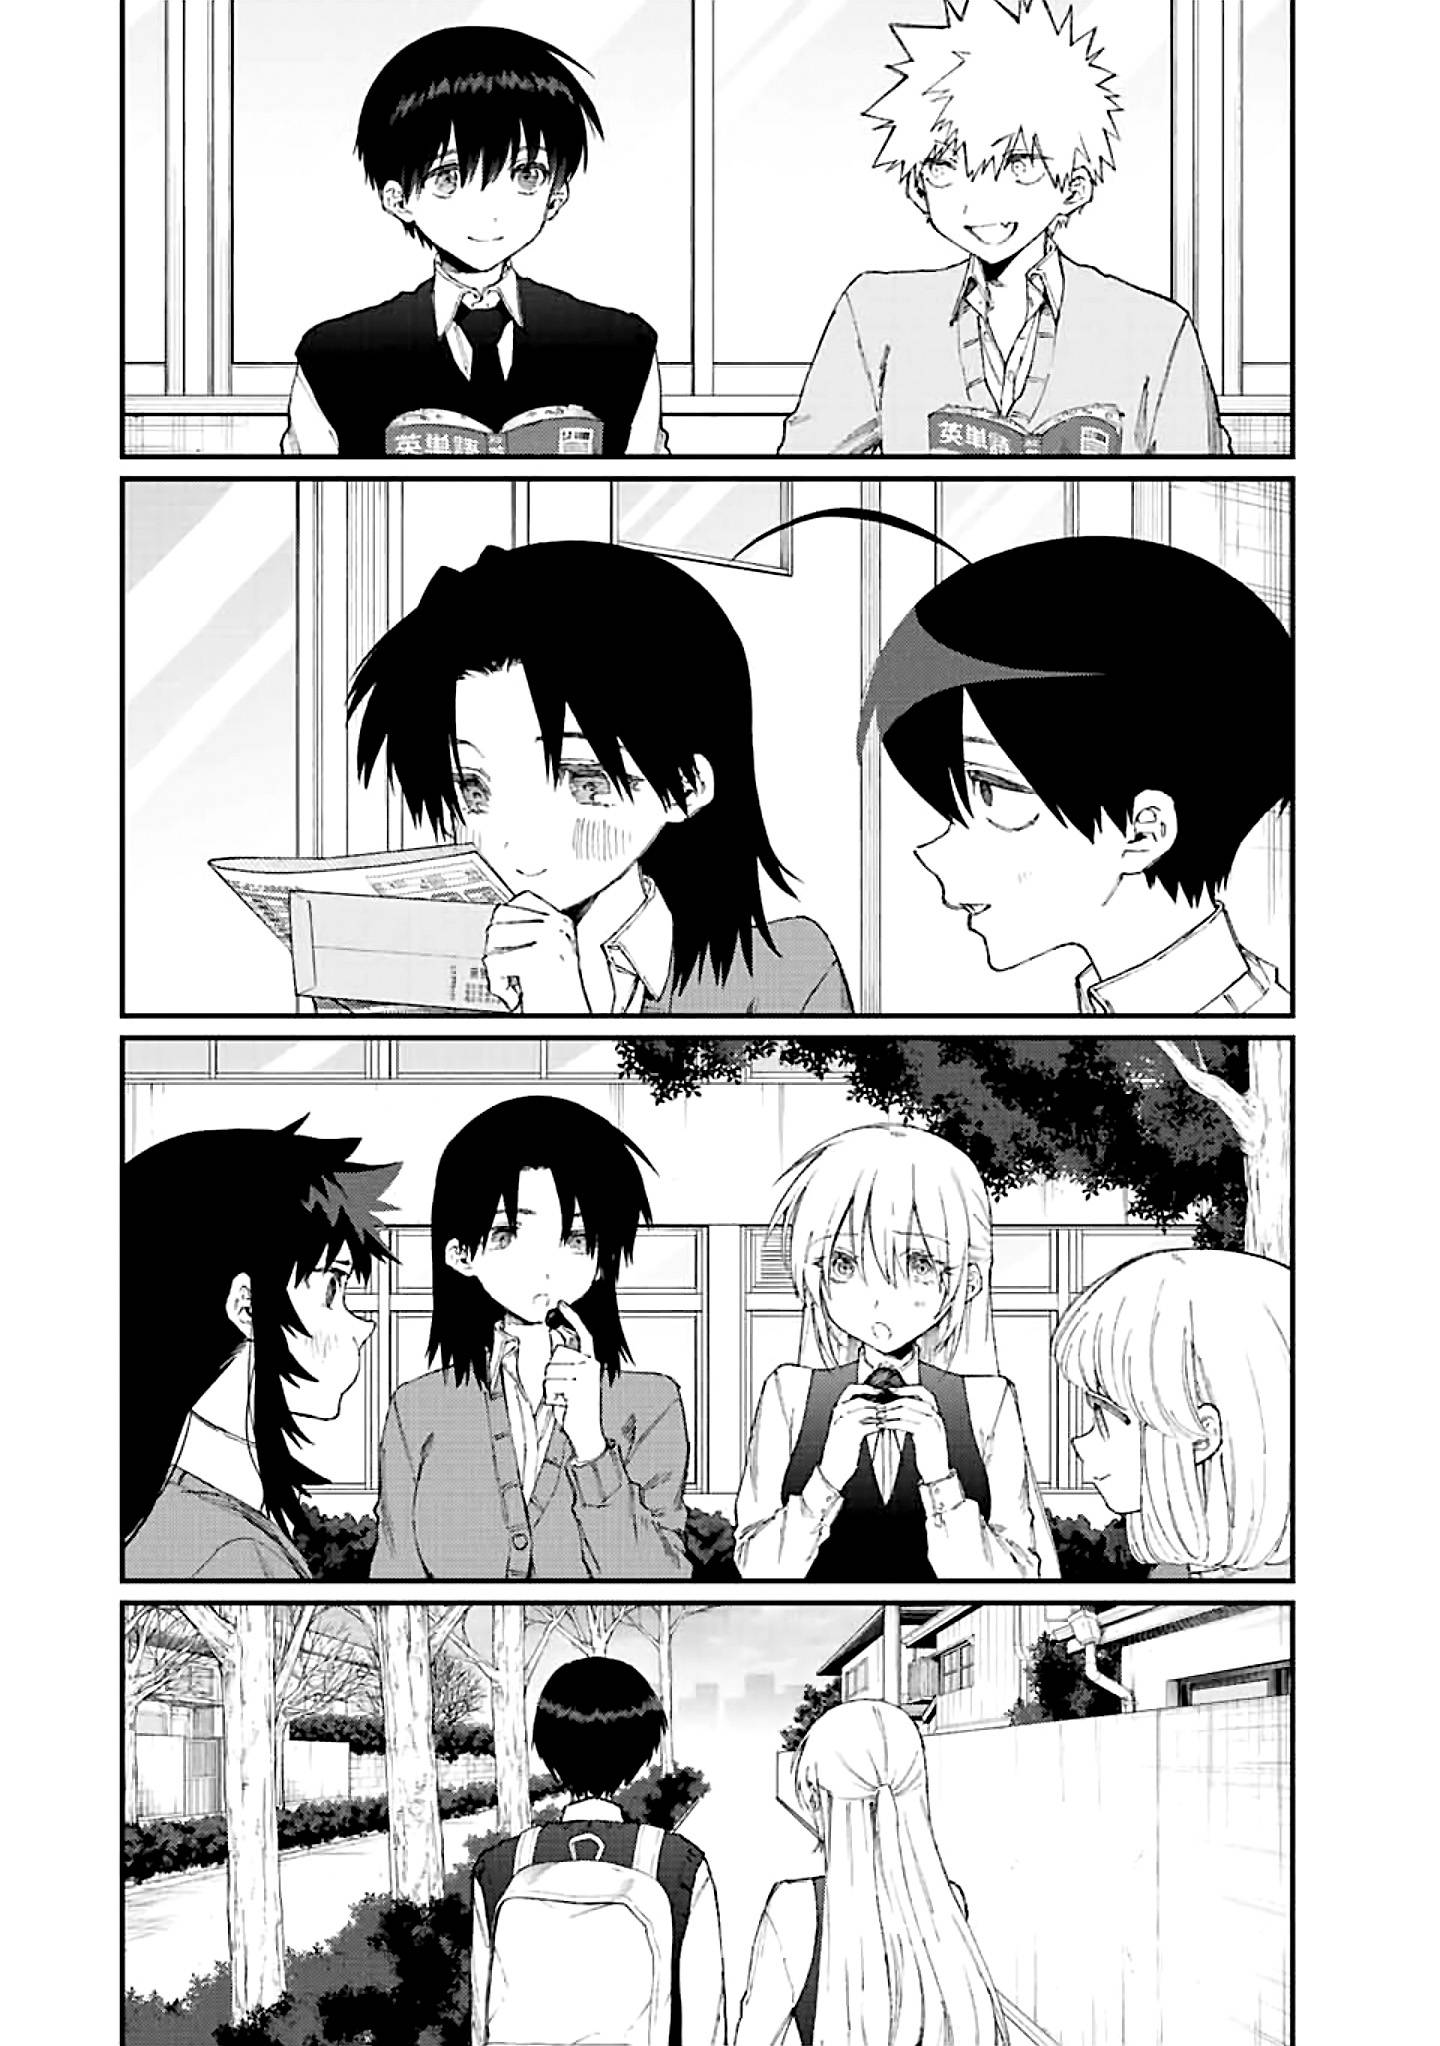 Shikimori's Not Just A Cutie - chapter 167 - #4